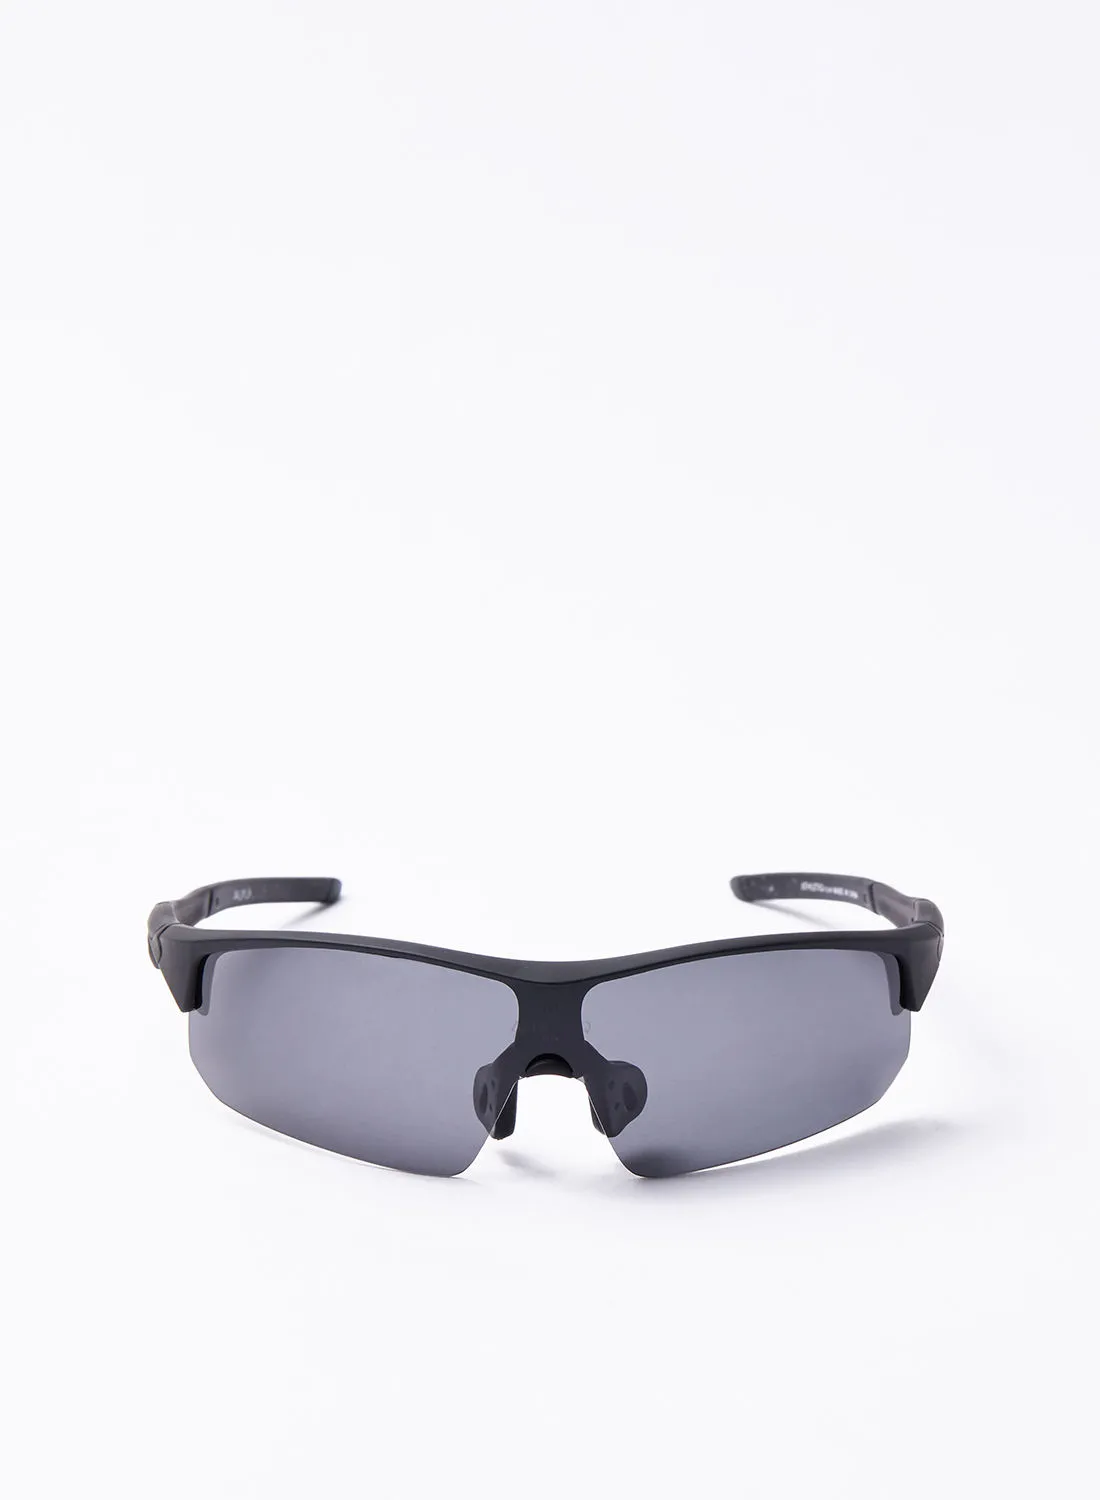 نظارة شمسية Athletiq للدراجات البخارية - Athletiq Club Oryx - إطار أسود مع عدسة عاكسة سوداء دخانية متعددة الطبقات